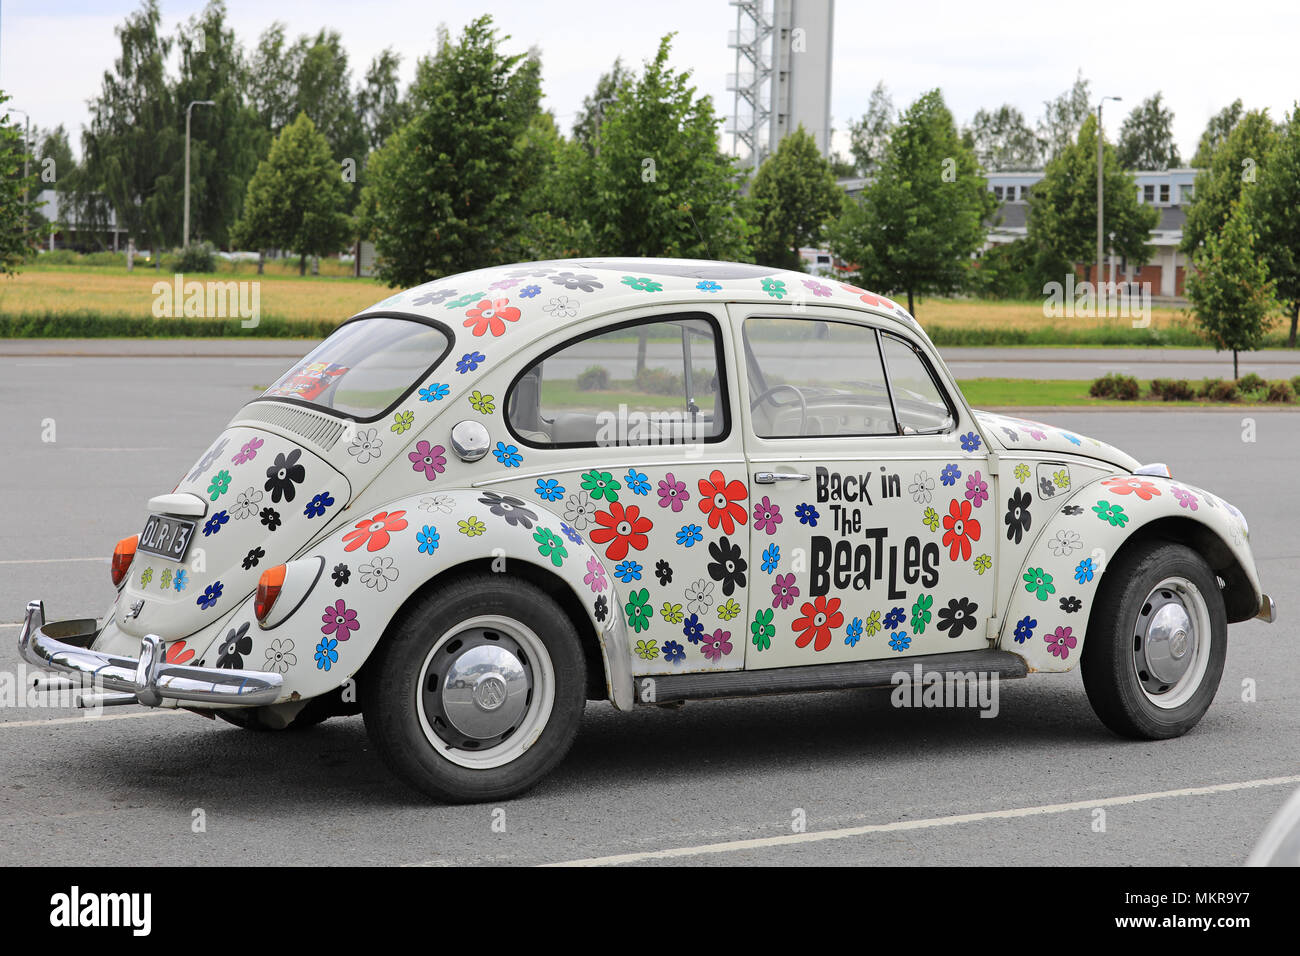 Back in The Beatles scarabeo di Volkswagen, ufficialmente la Volkswagen Tipo 1, dipinte con disegno floreale per celebrare i Beatles internazionale caso in La Foto Stock